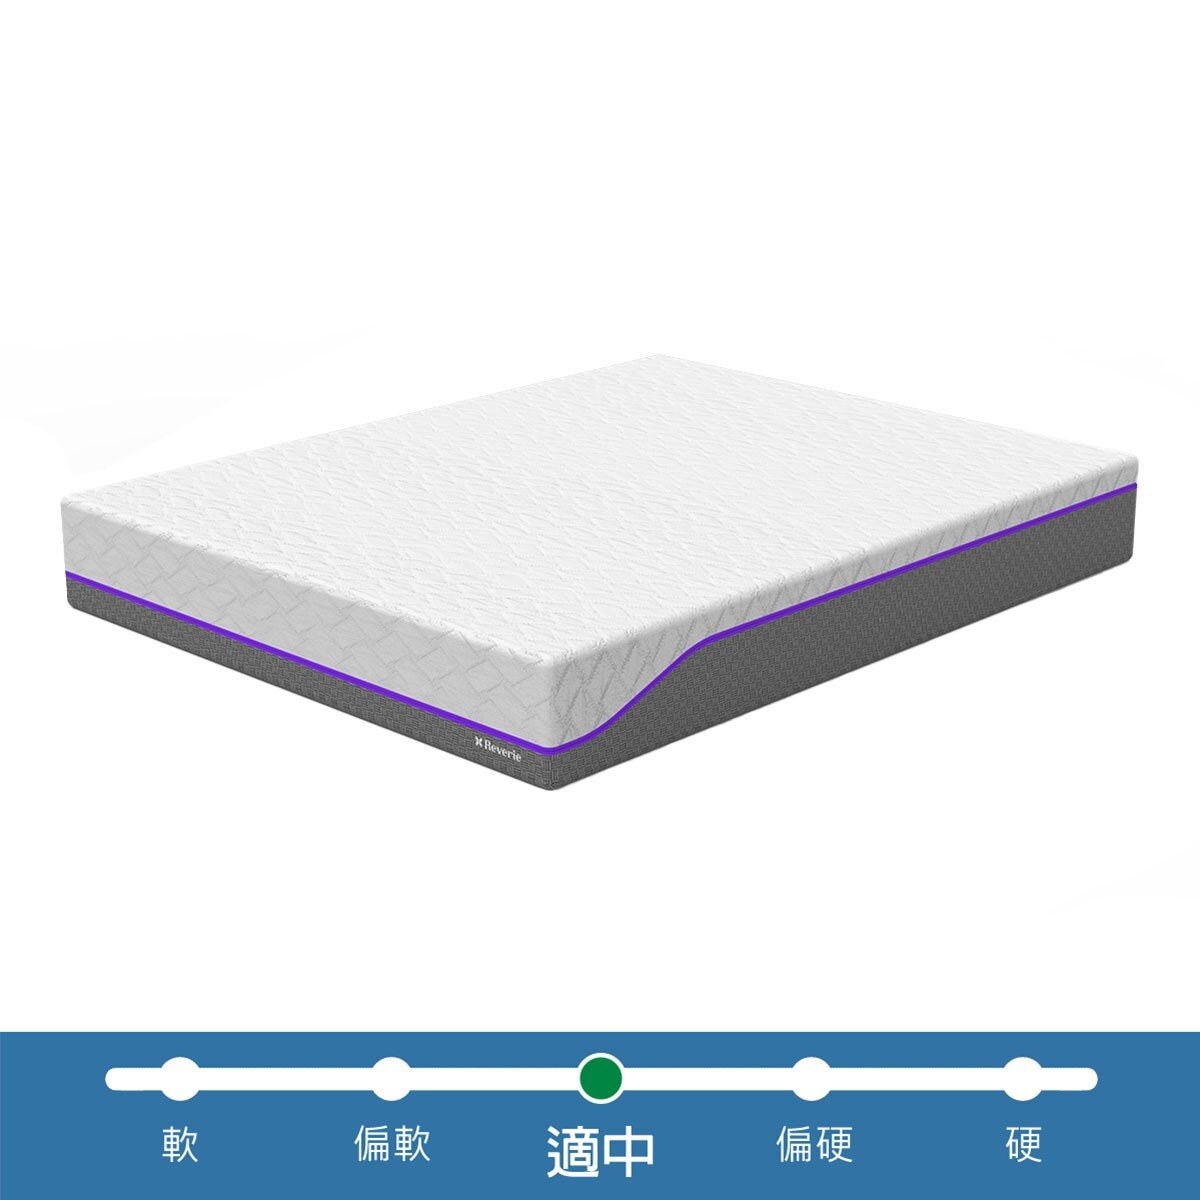 幻知曲 RF300 標準雙人睡眠系統贈保潔墊 150公分 X 200公分